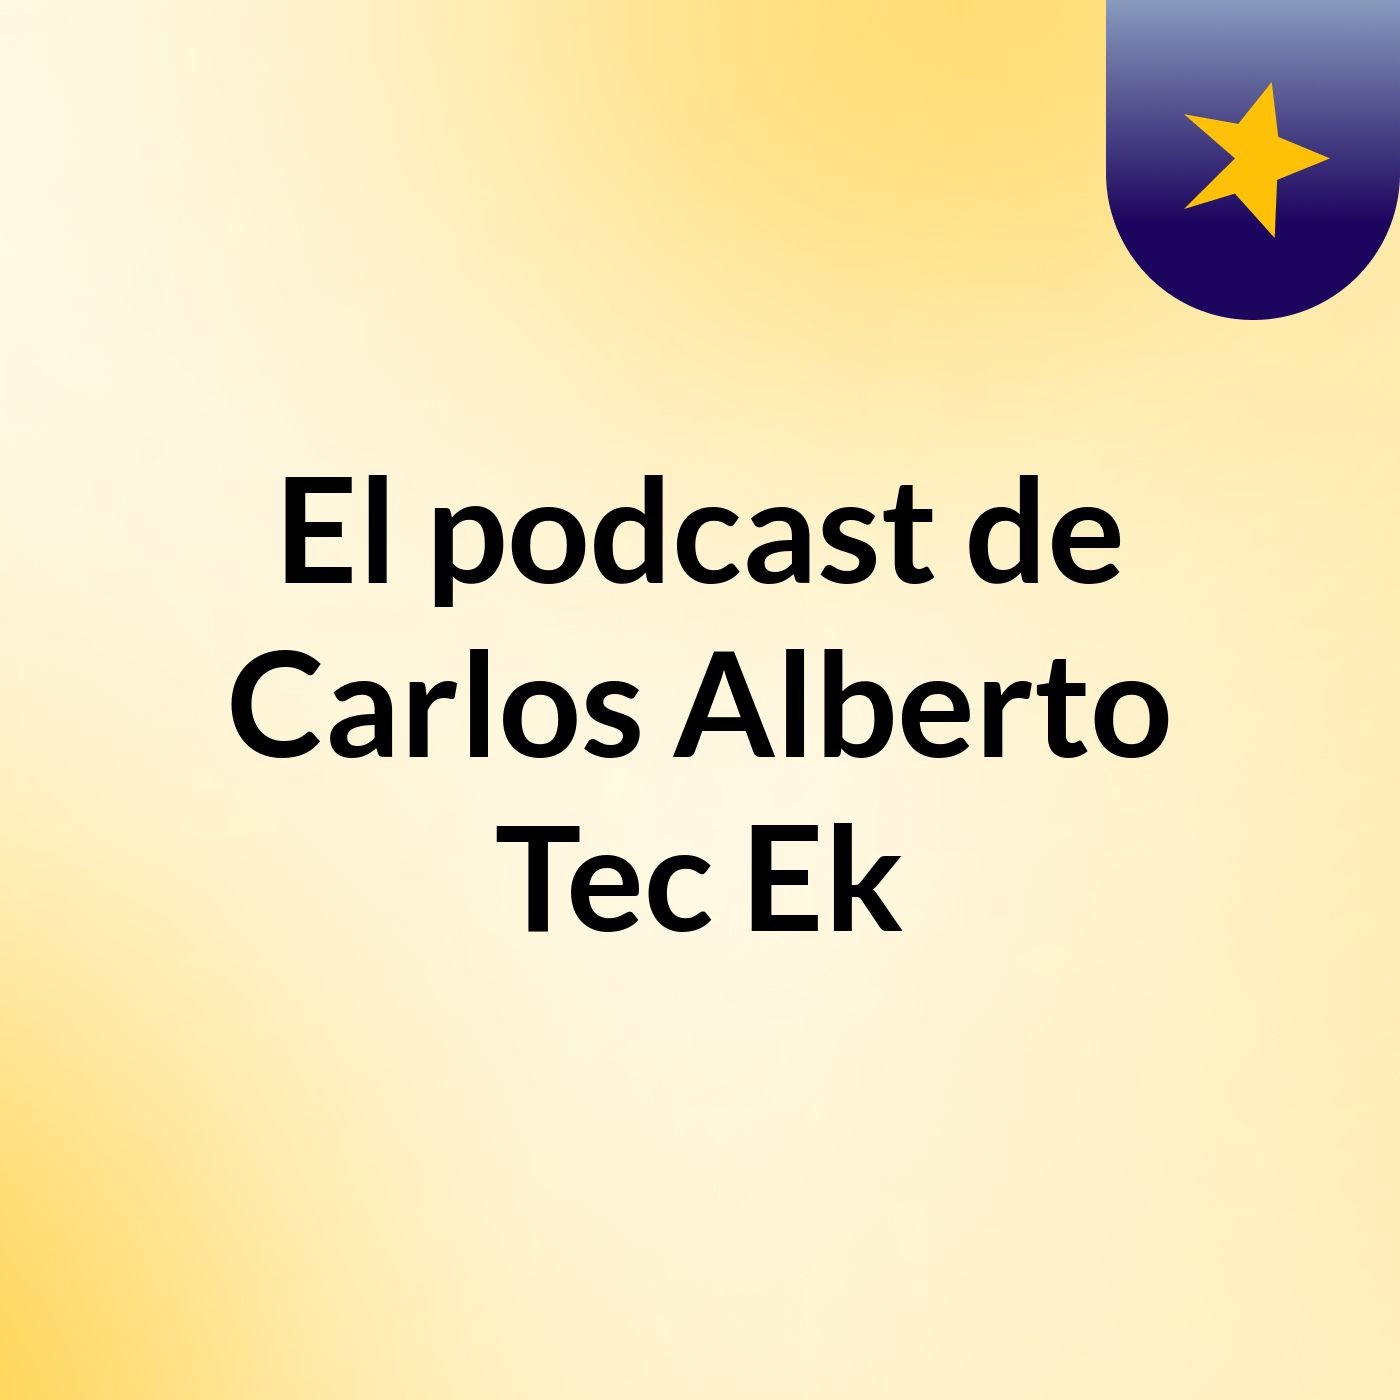 El podcast de Carlos Alberto Tec Ek